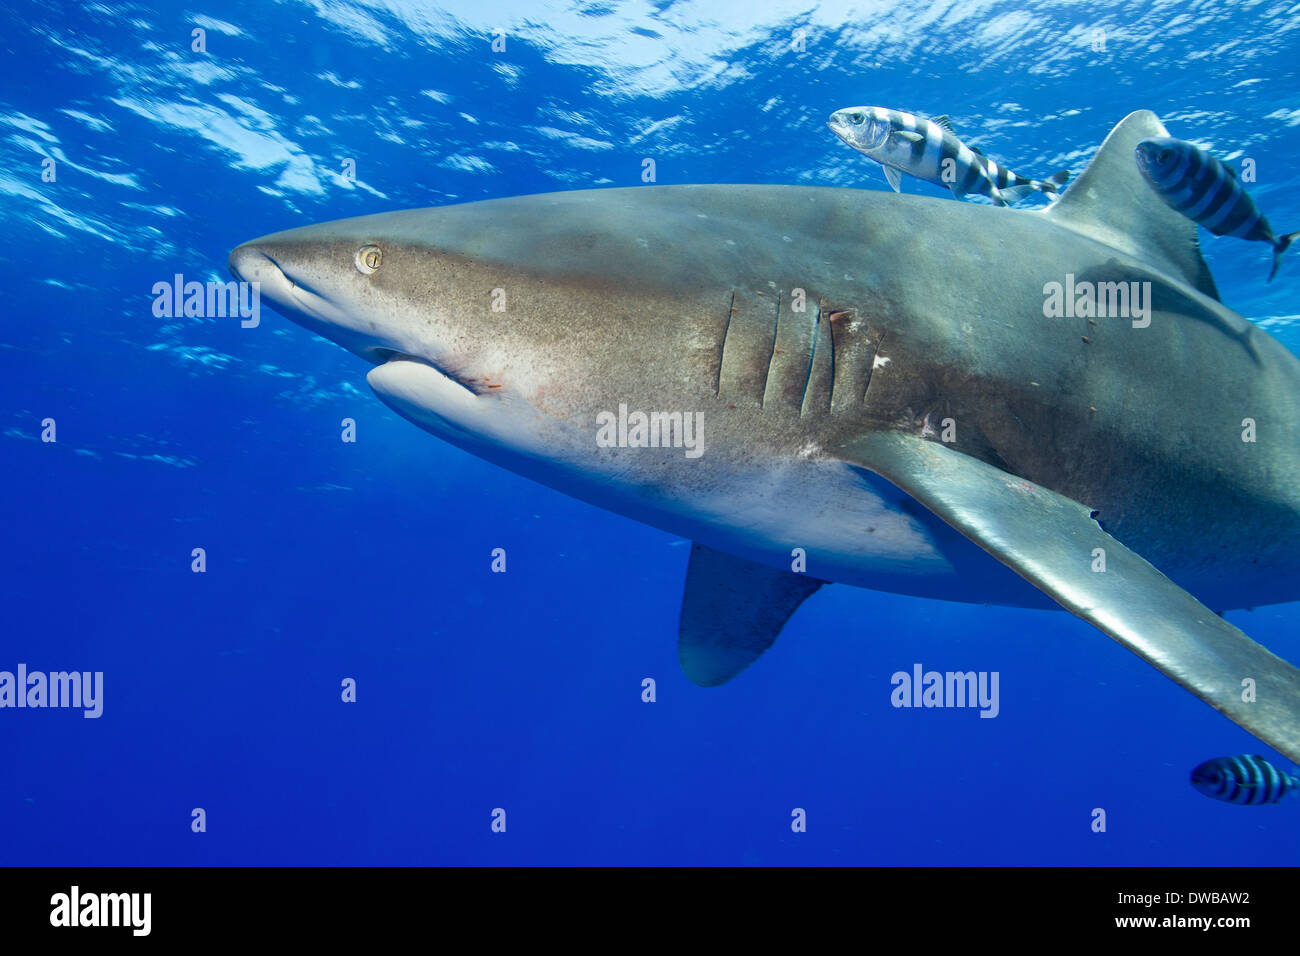 Oceanic whitetip shark. Stock Photo